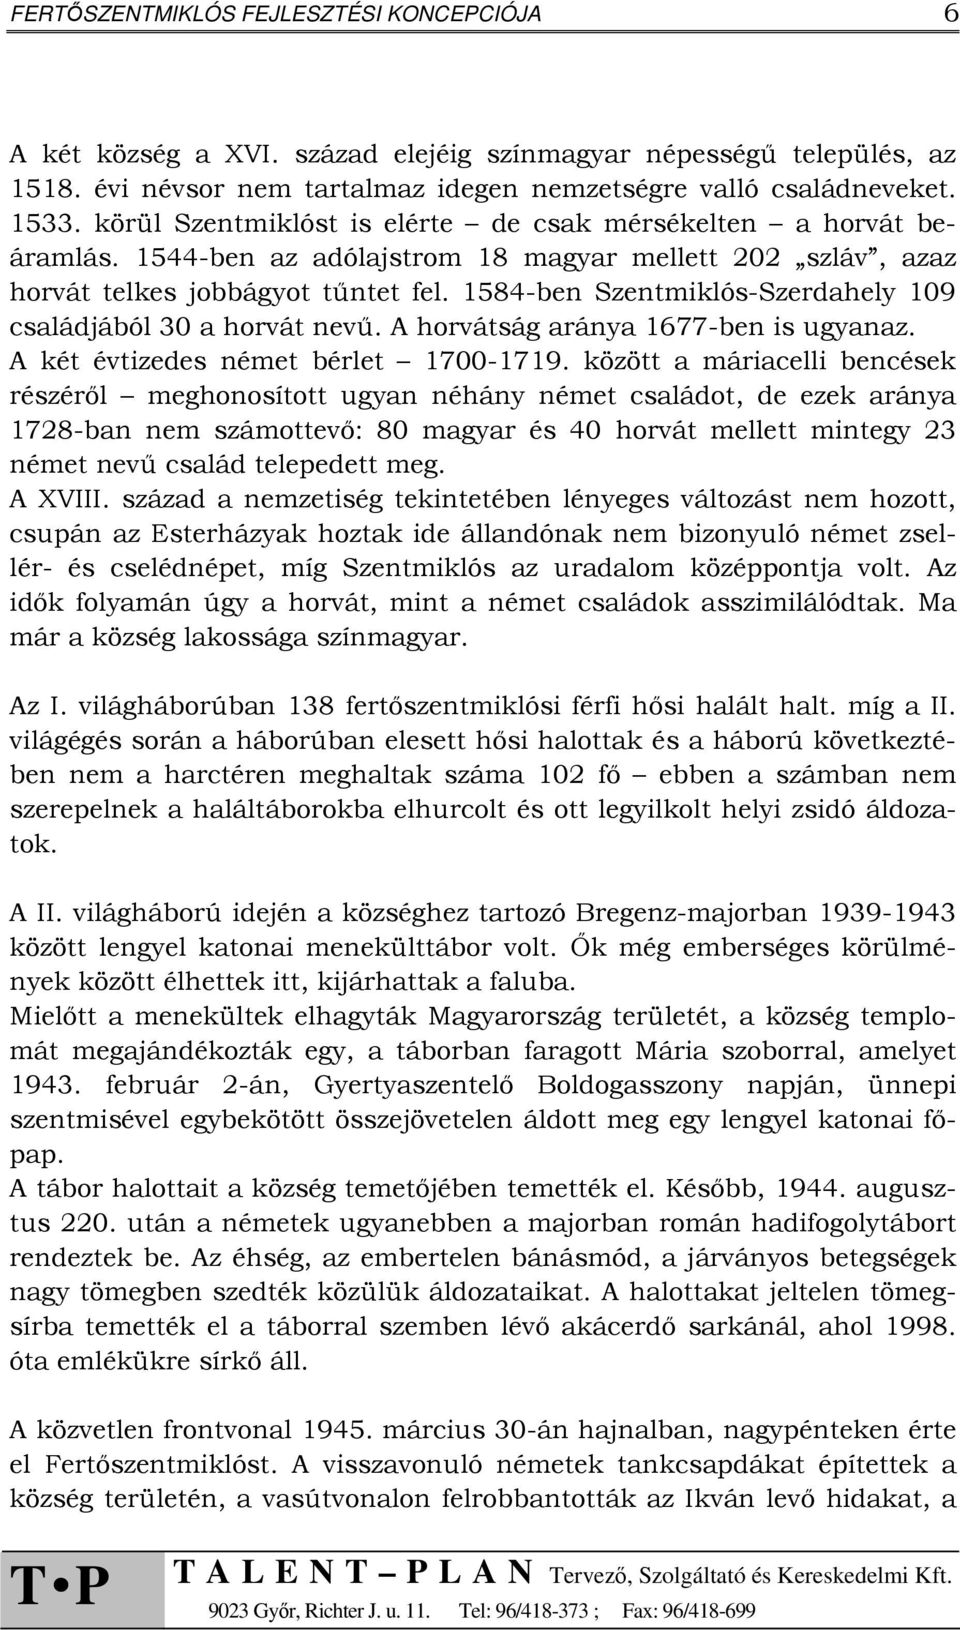 1584-ben Szentmiklós-Szerdahely 109 családjából 30 a horvát nevű. A horvátság aránya 1677-ben is ugyanaz. A két évtizedes német bérlet 1700-1719.